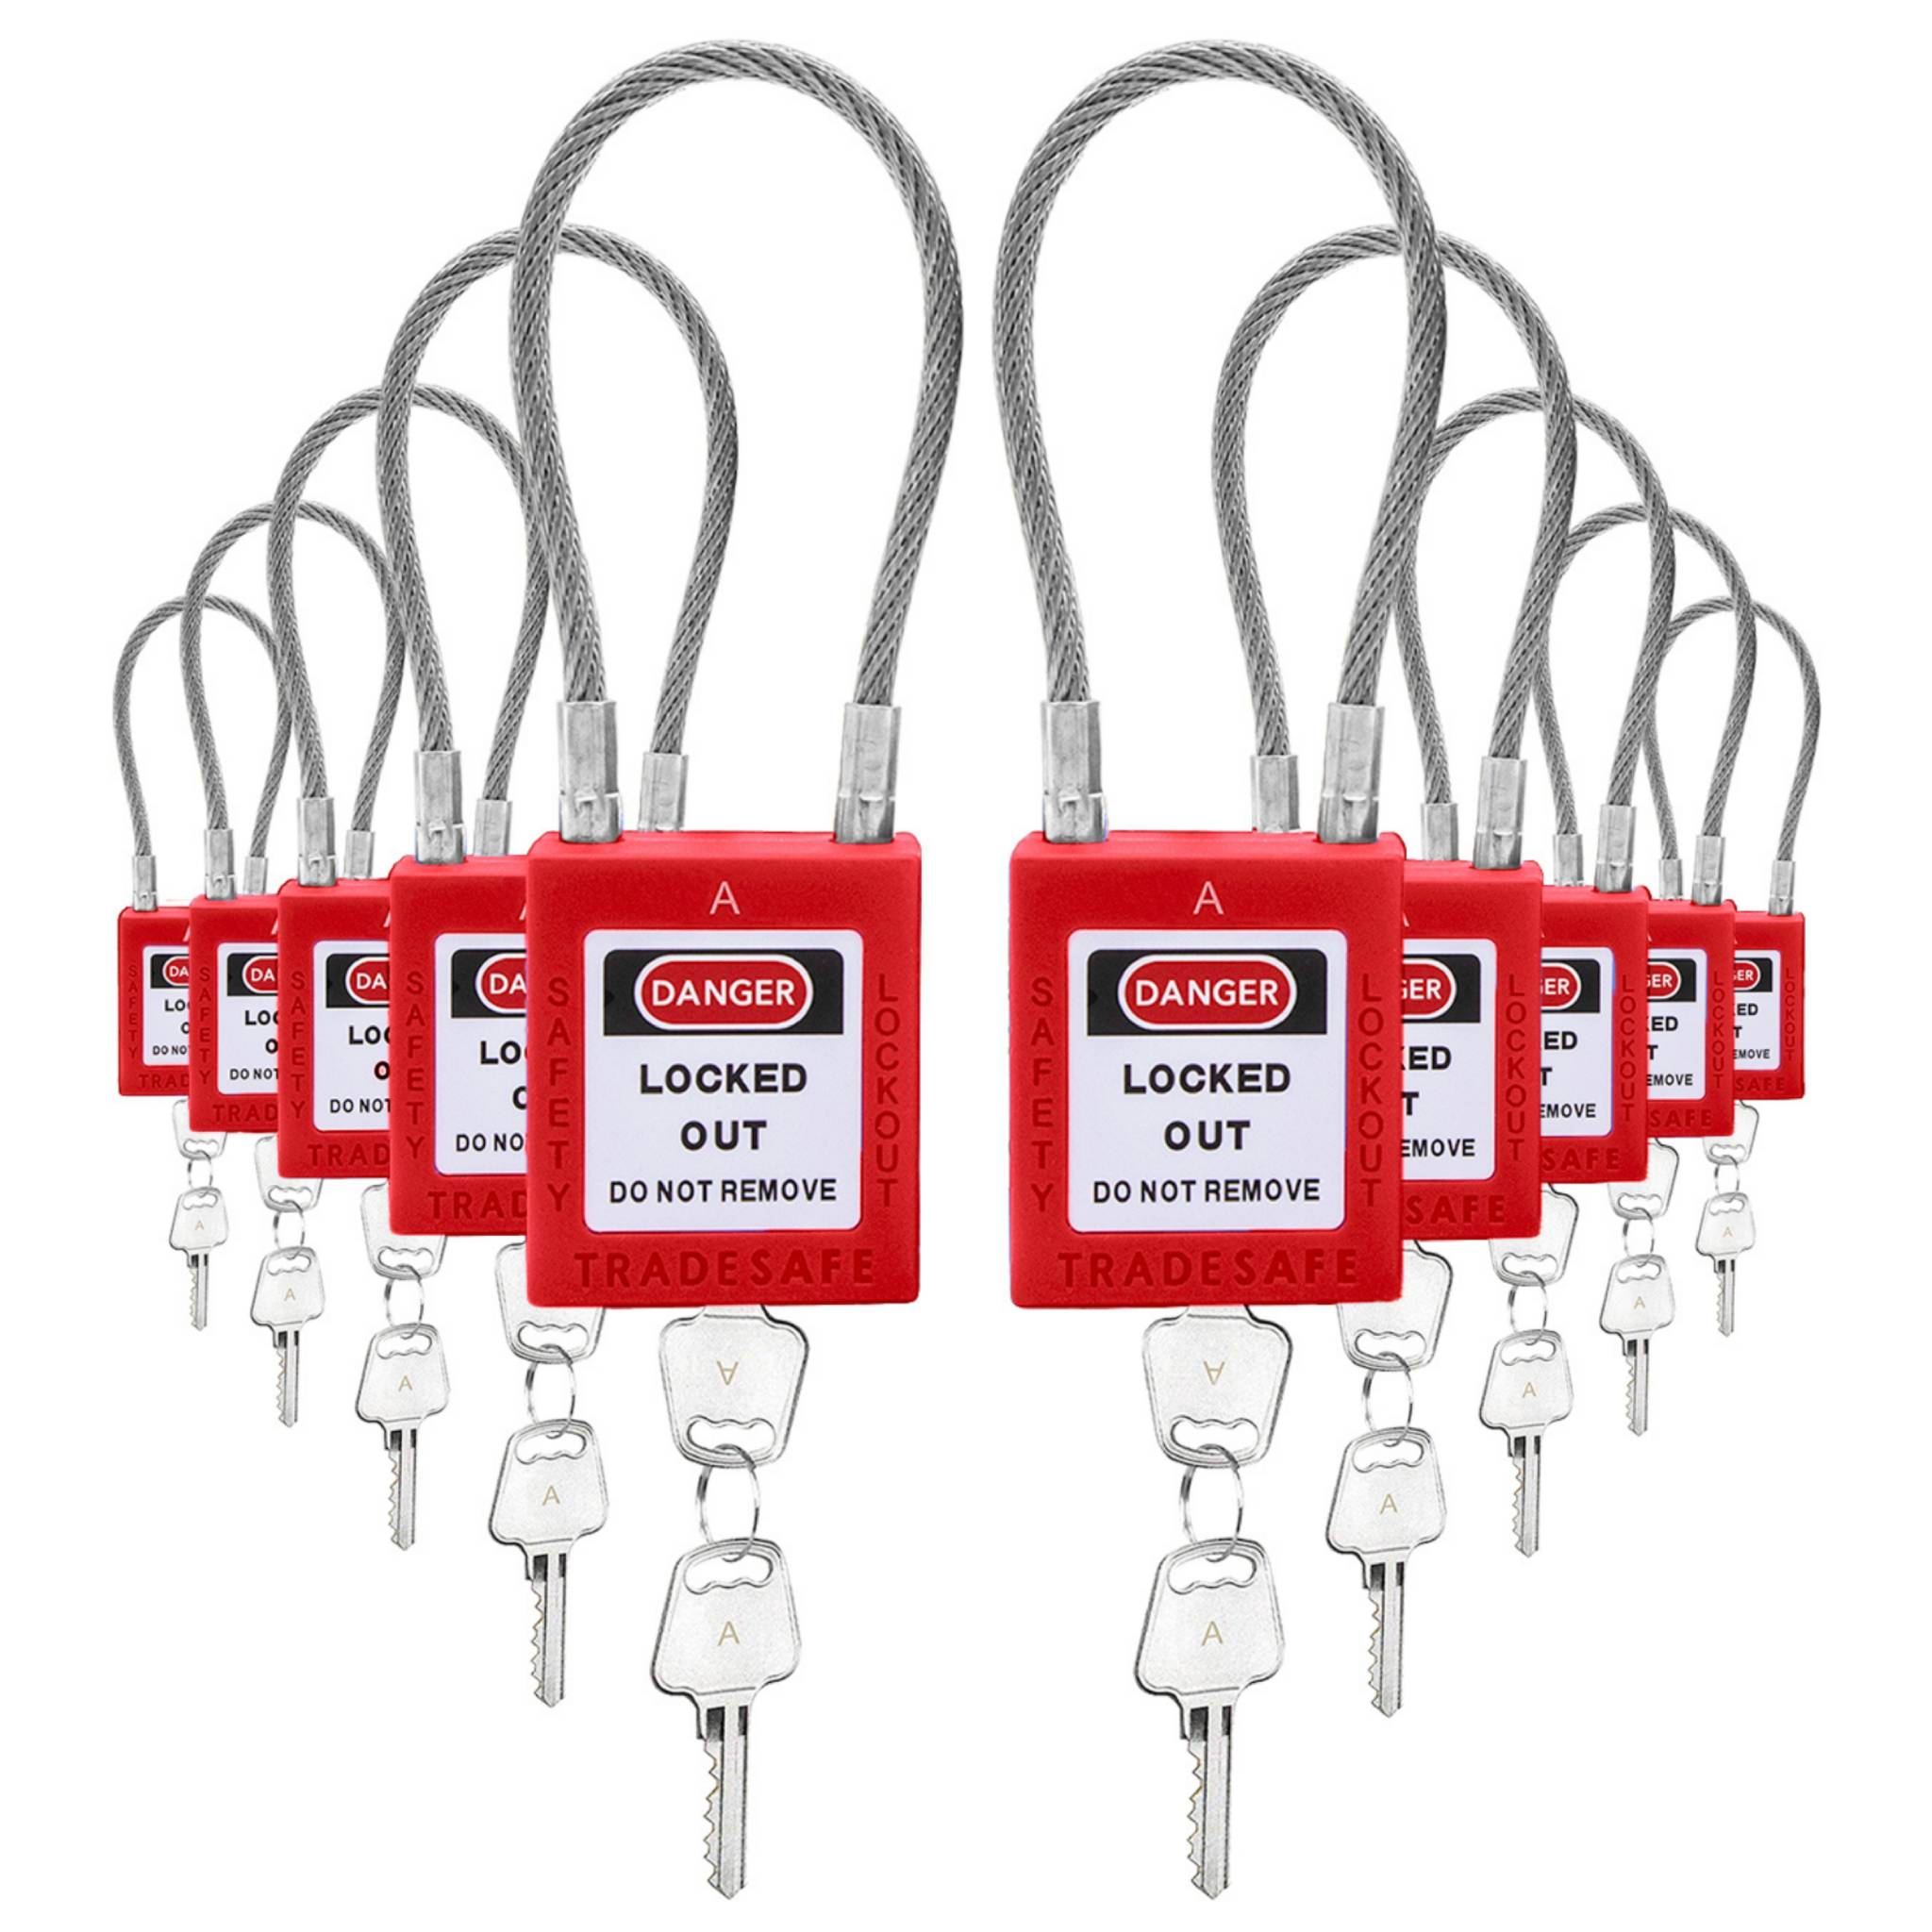 Candados de cable ilimitados con llaves iguales - 10 candados rojos - 2 llaves por candado